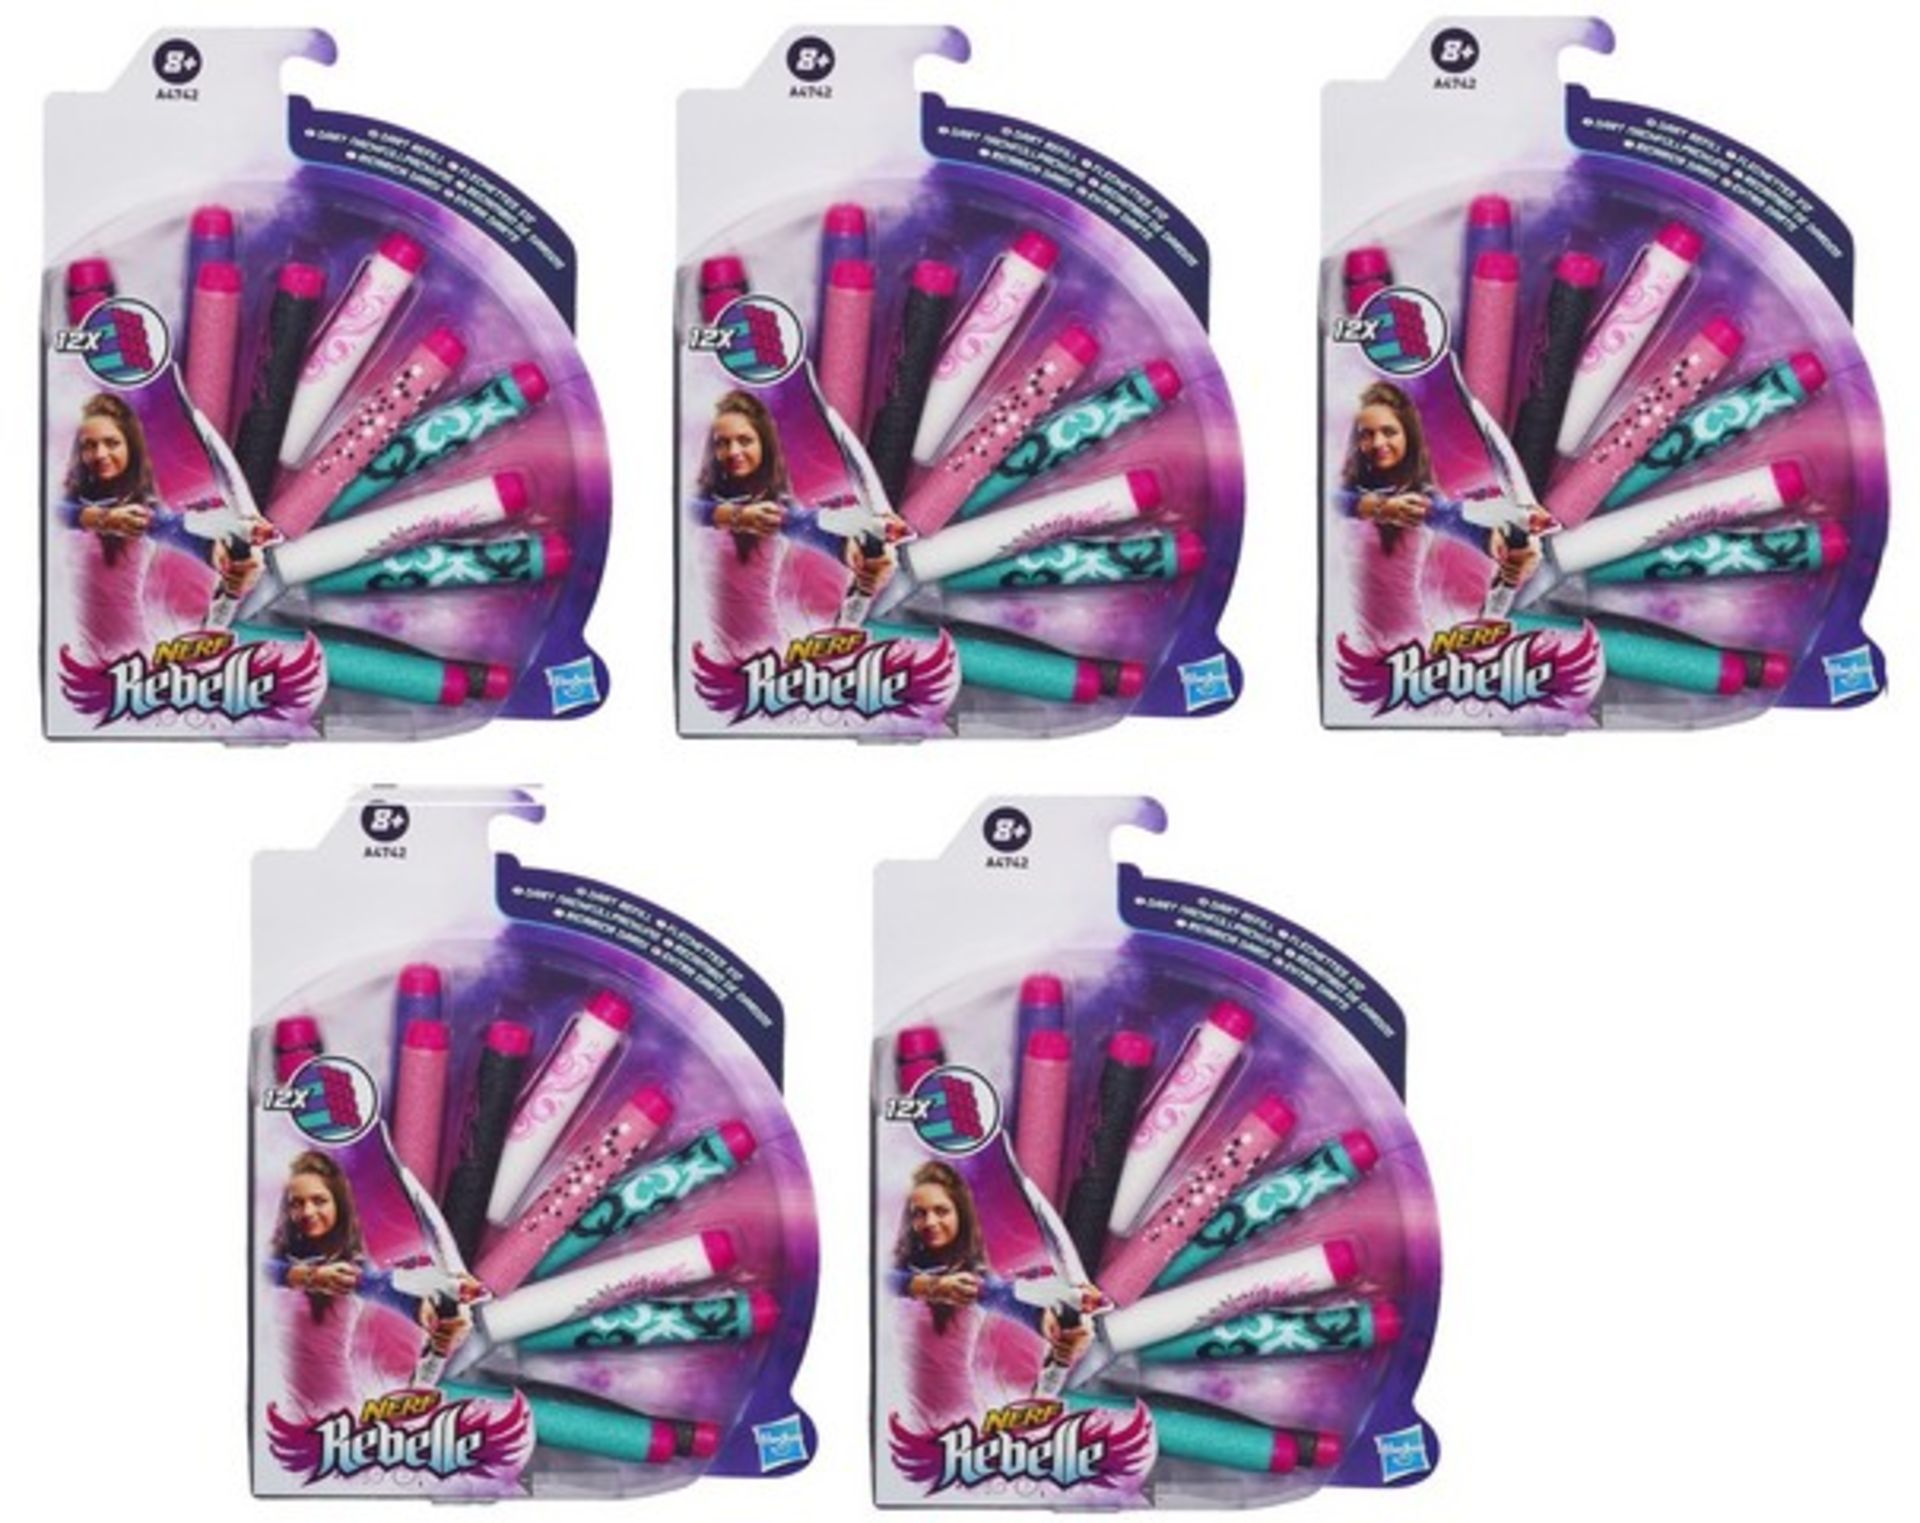 + VAT Brand New 5 Packs Hasbro Nerf Rebelle 12 x Dart Refill - Amazon Price Â£37.85